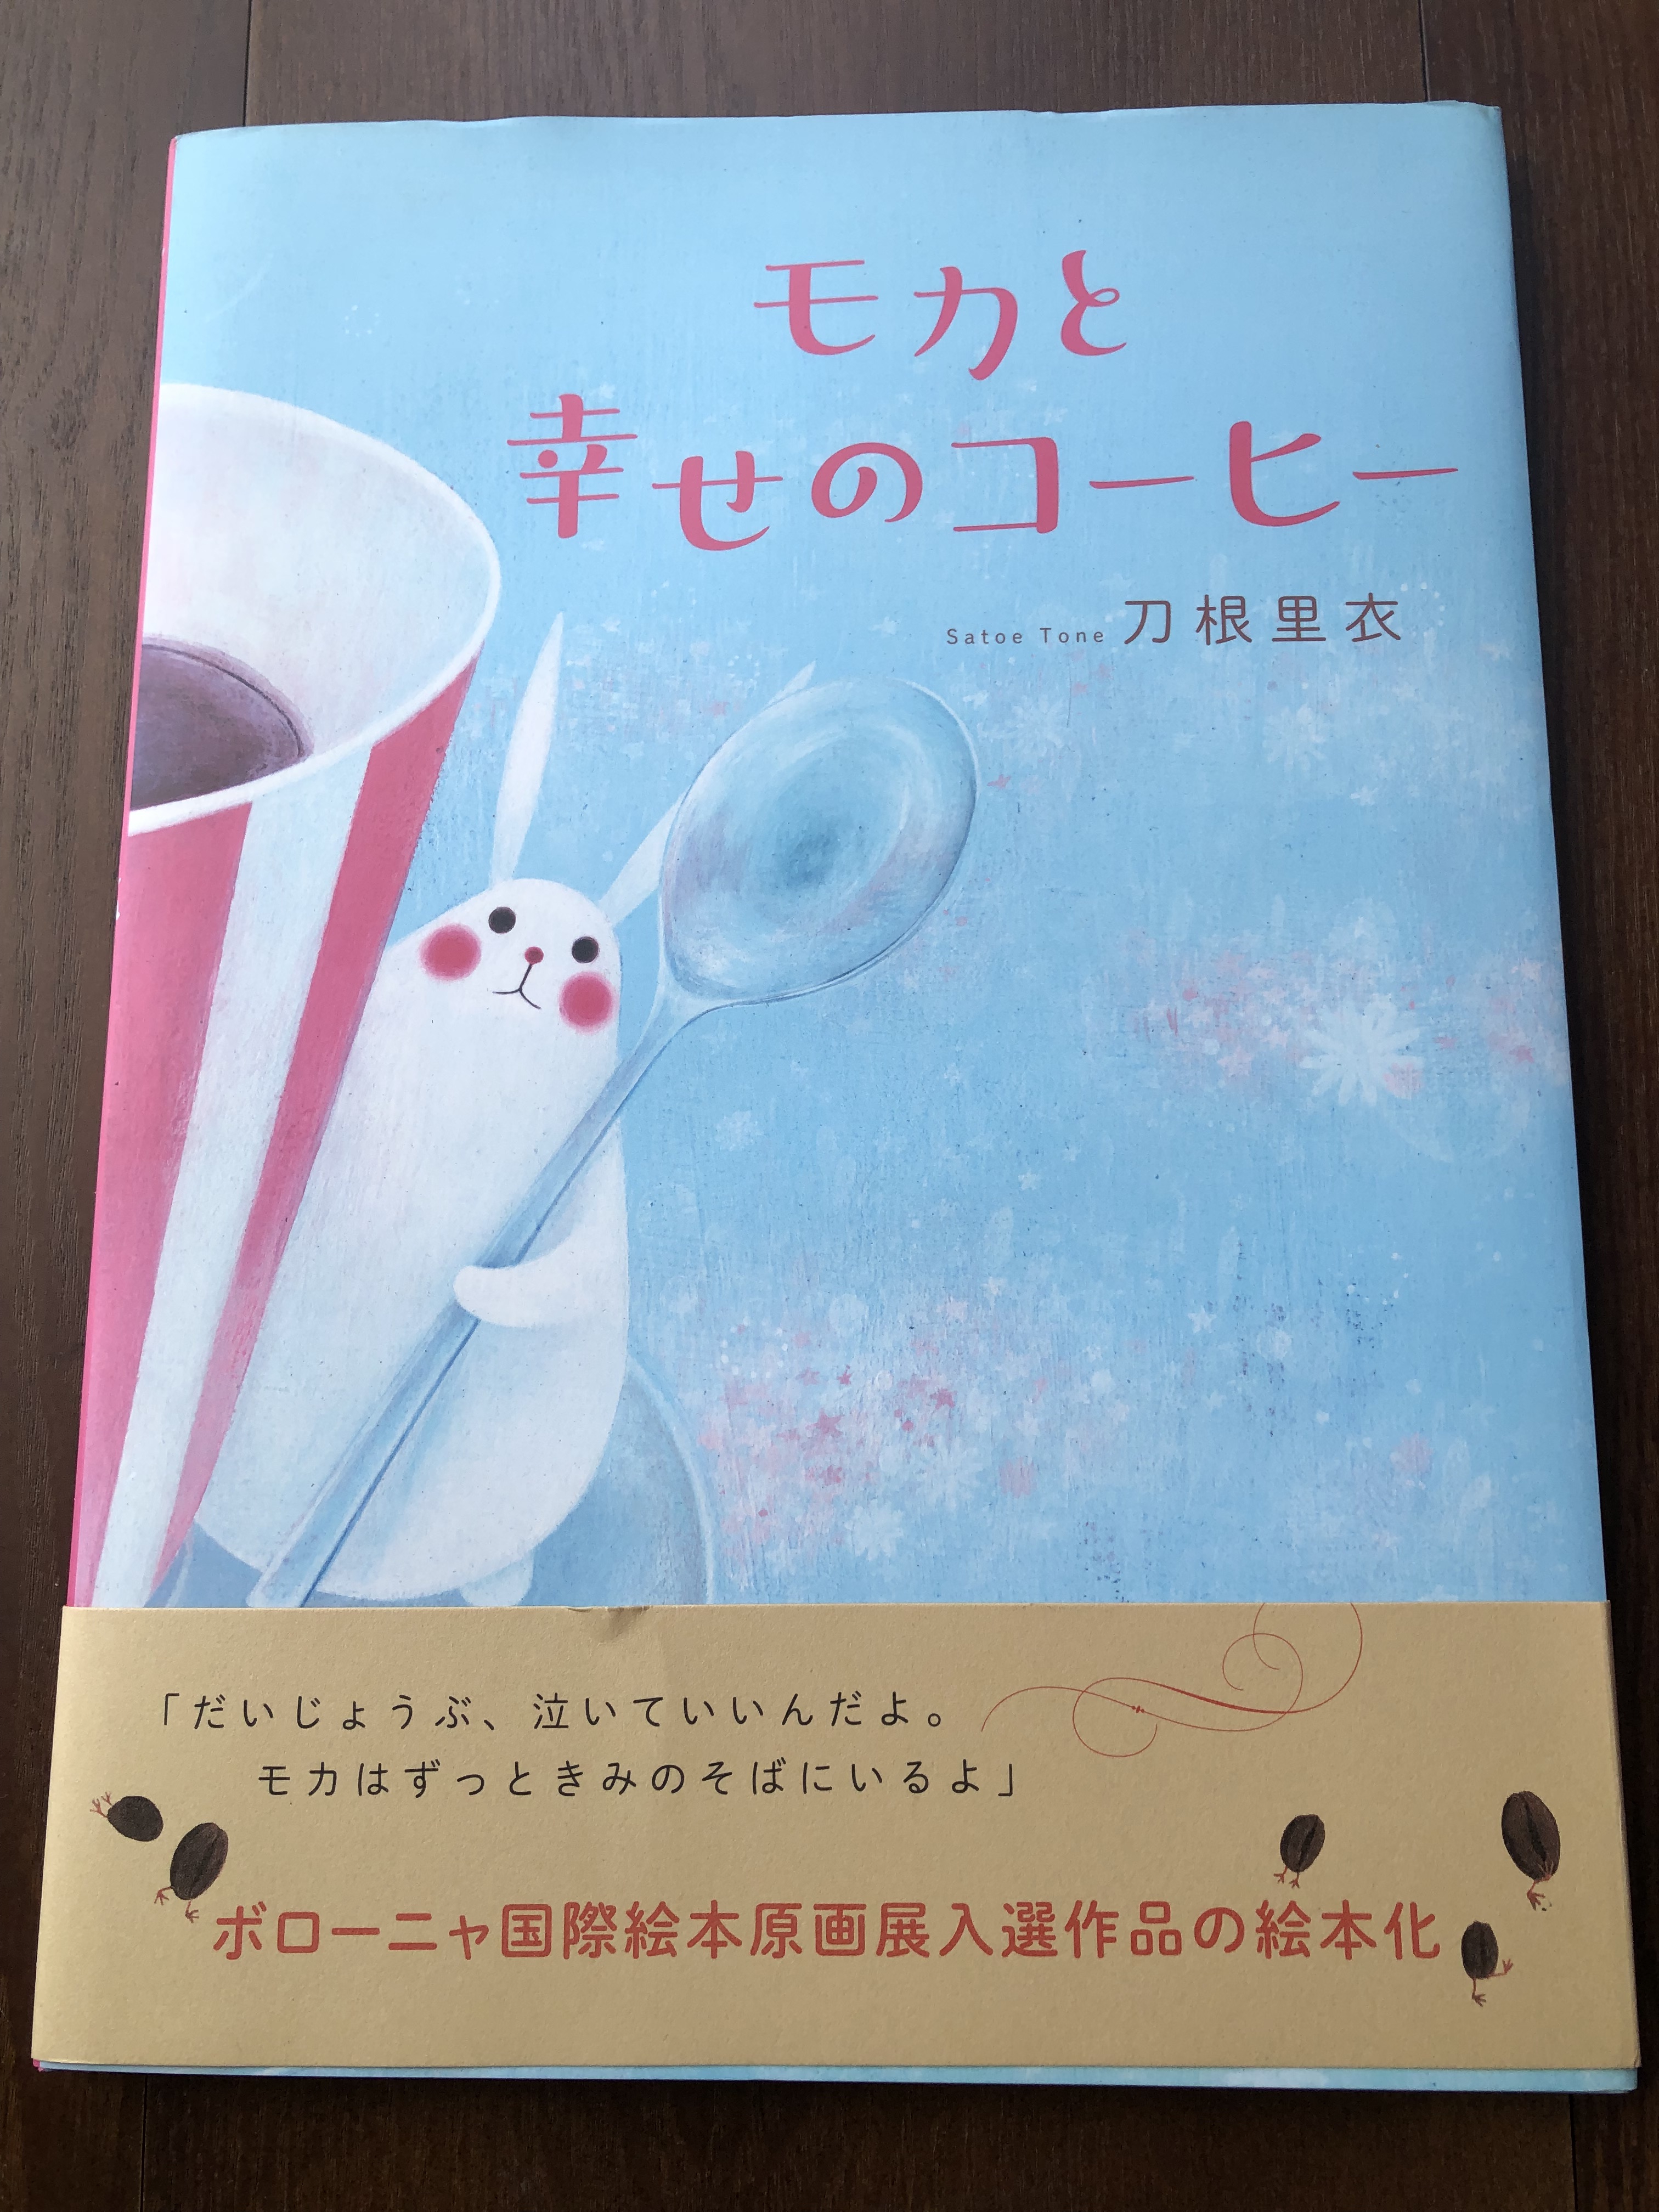 モカと幸せのコーヒー 高津幸光 Kamimamori Hikari49 S Ownd